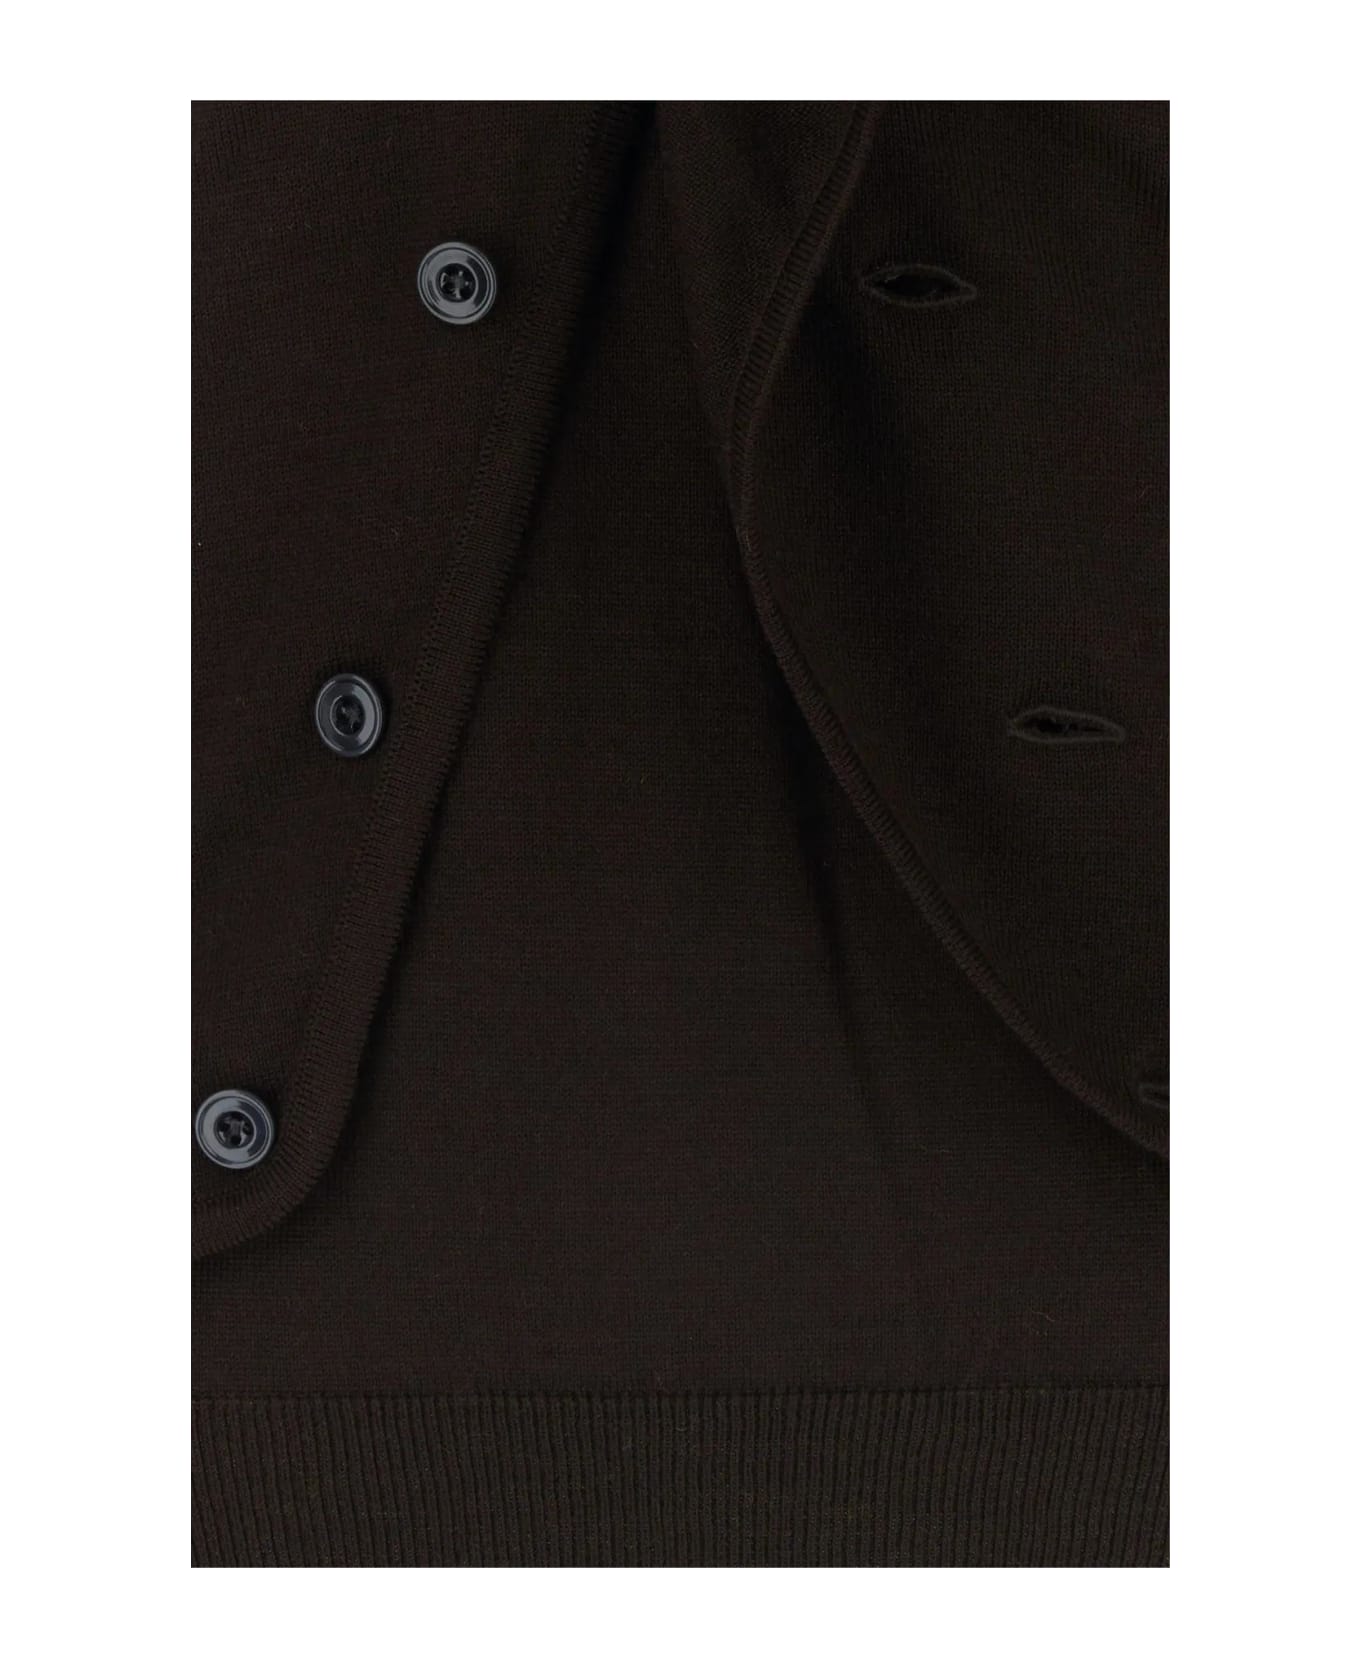 Lemaire Dark Brown Wool Blend Sweater - Pecan Brown